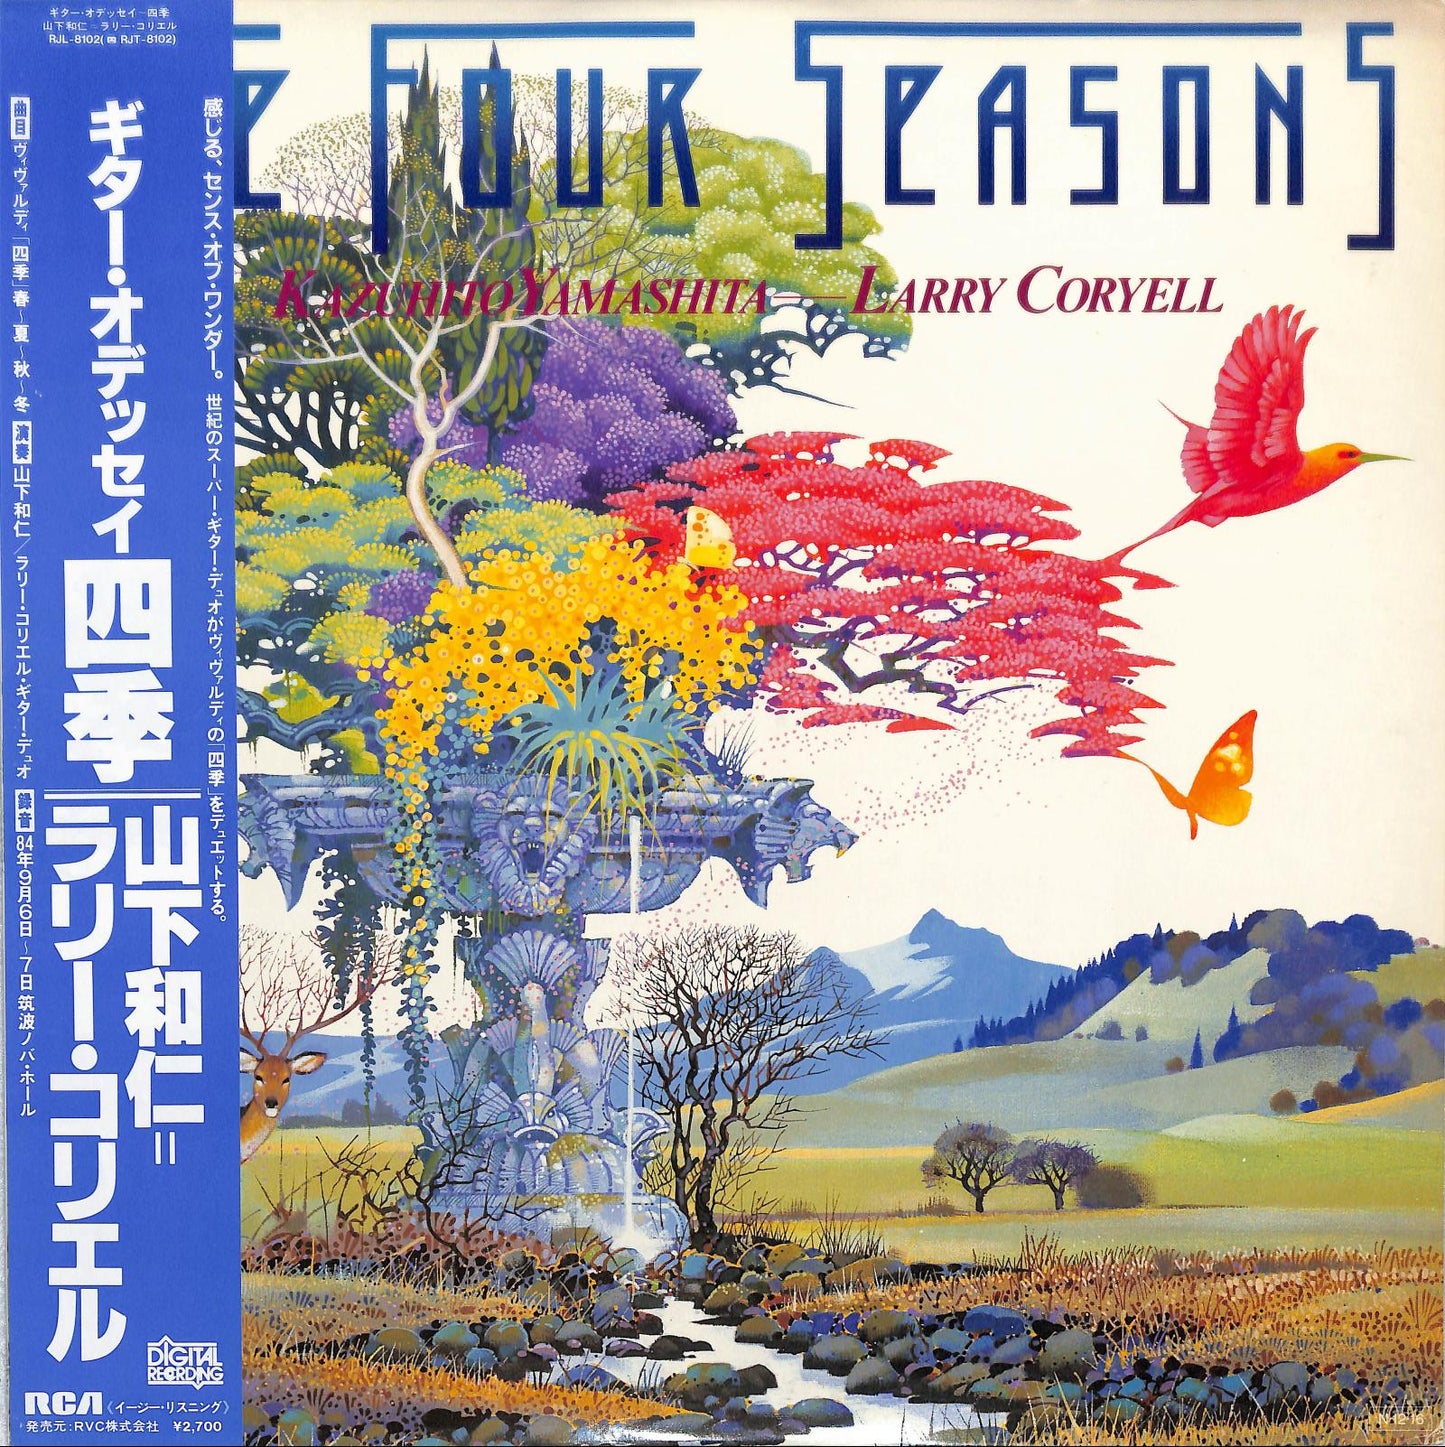 KAZUHITO YAMASHITA & LARRY CORYELL - The Four Seasons